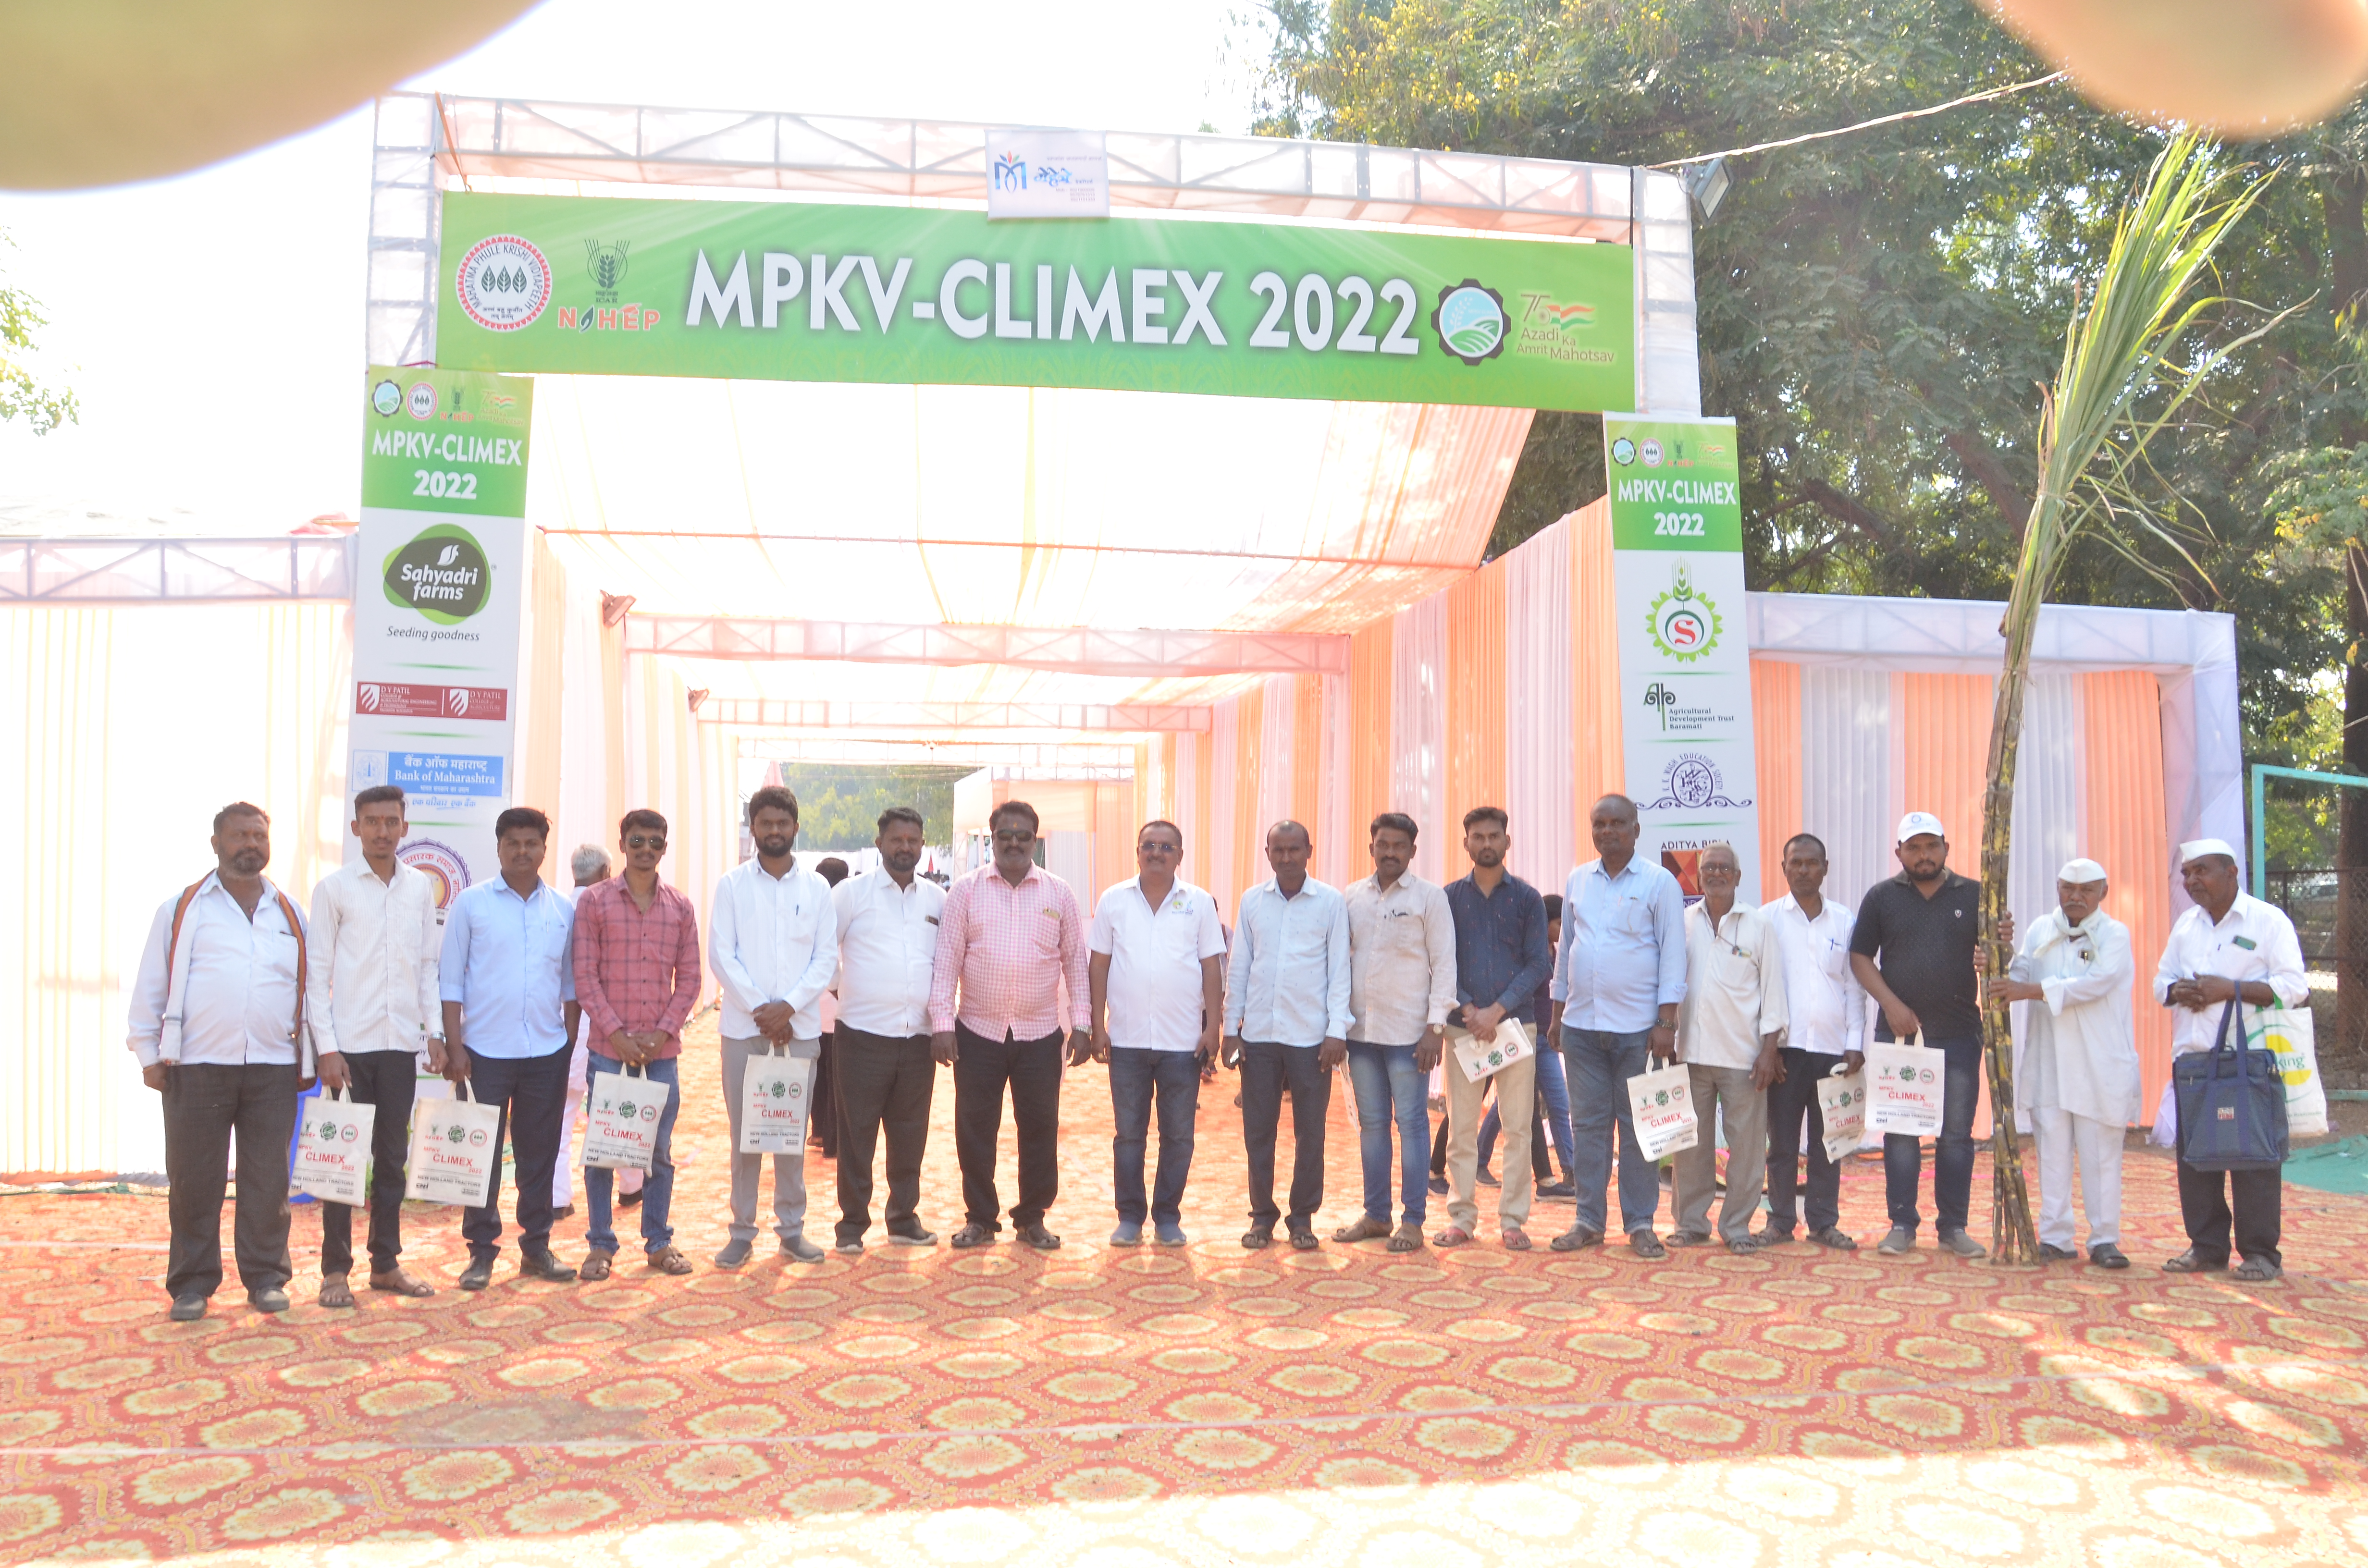 MPKV-CLIMEX 2022